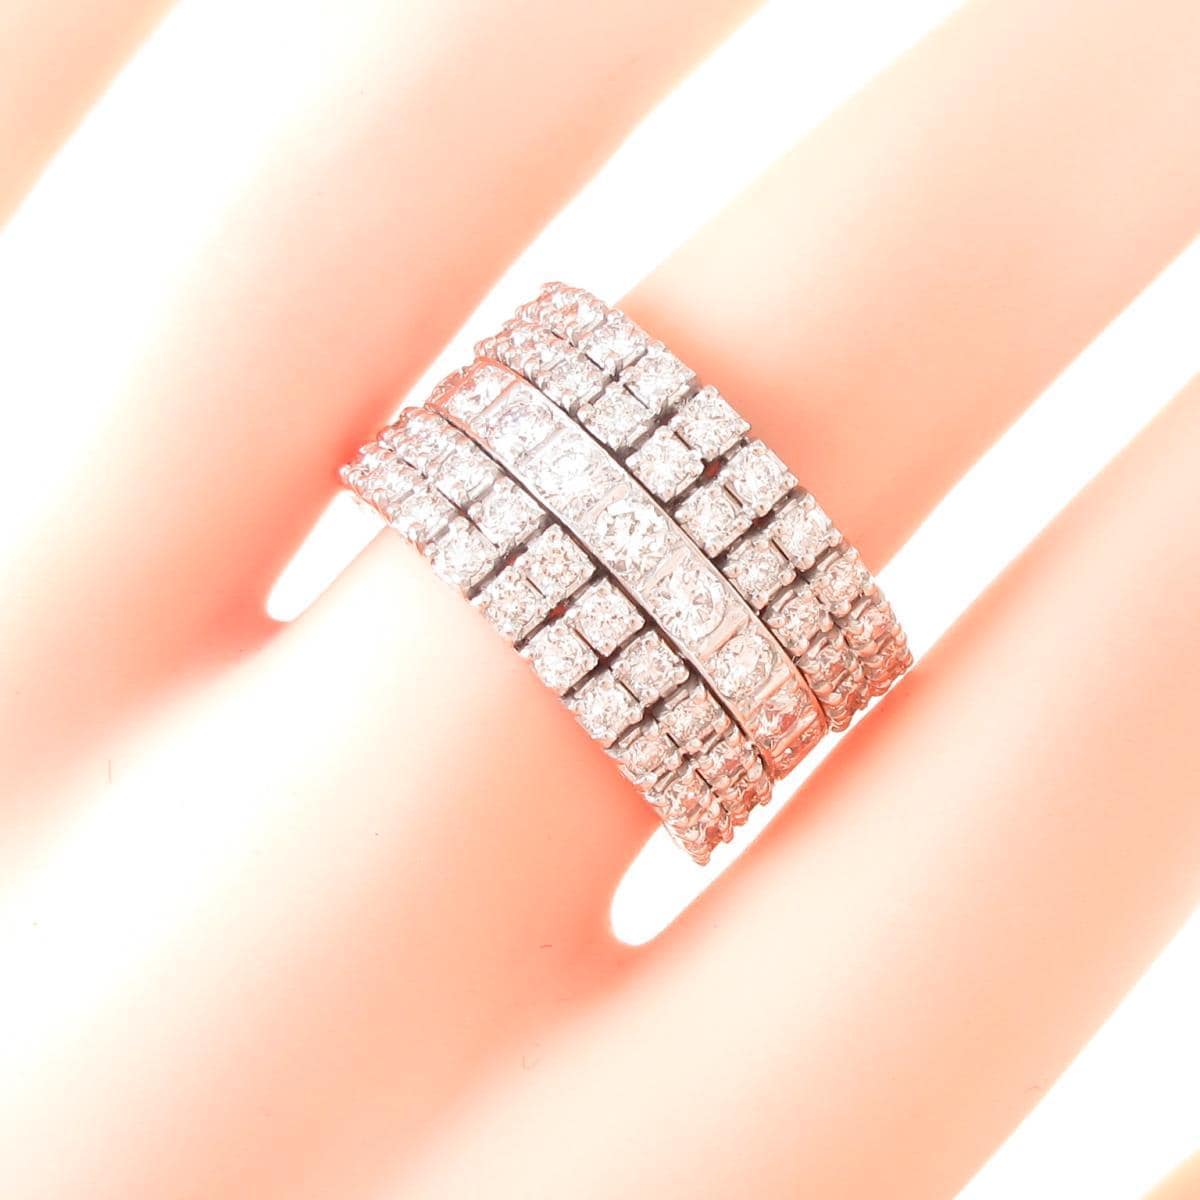 【本物保証人気】『極上美品』ダイヤモンドプロポーズ結婚指輪1.0 ctプラチナPT 95060 アクセサリー